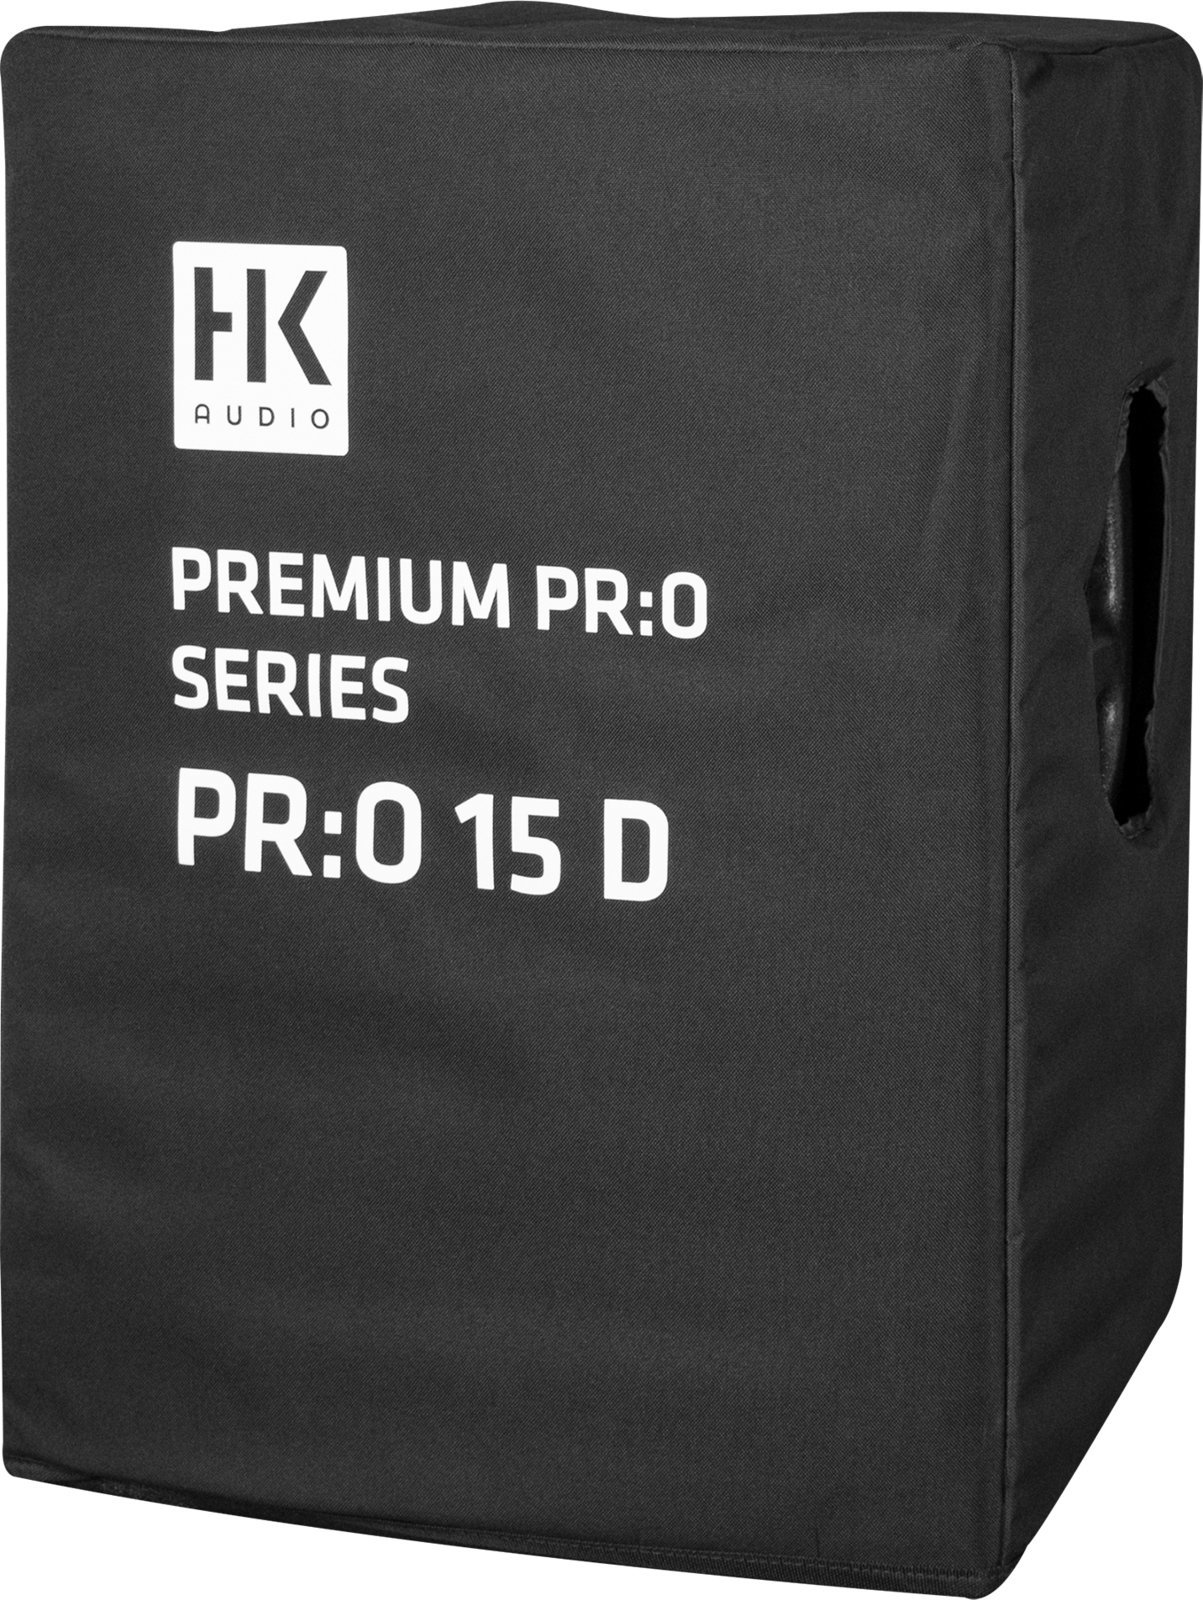 Väska för högtalare HK Audio PR:O 15 D CVR Väska för högtalare